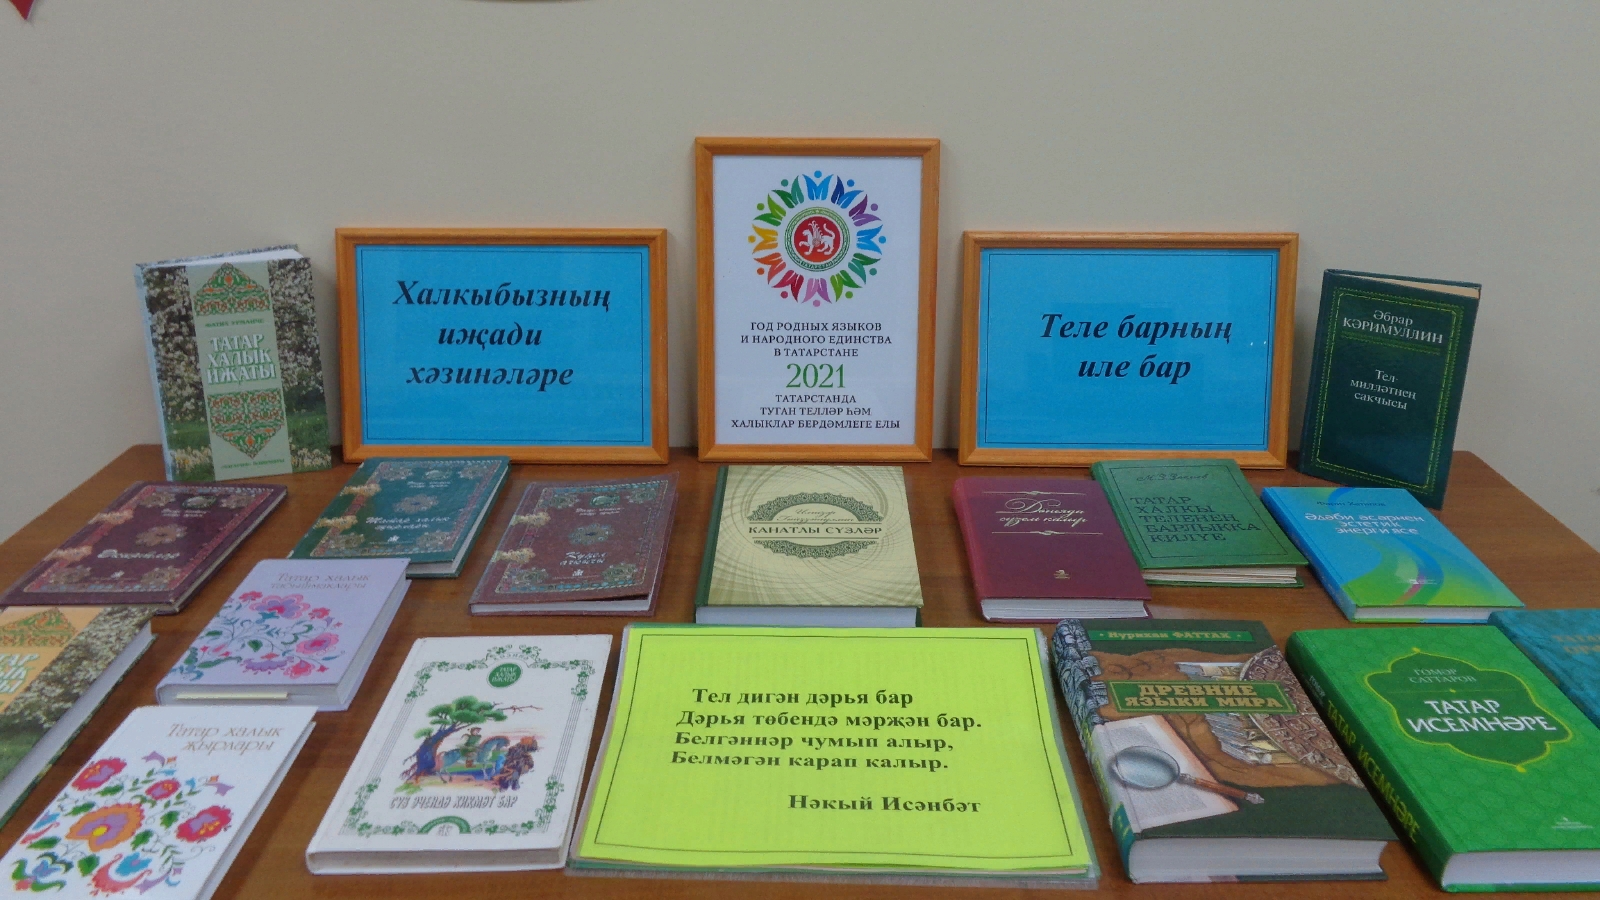 Выставка к году родных языков и народного единства